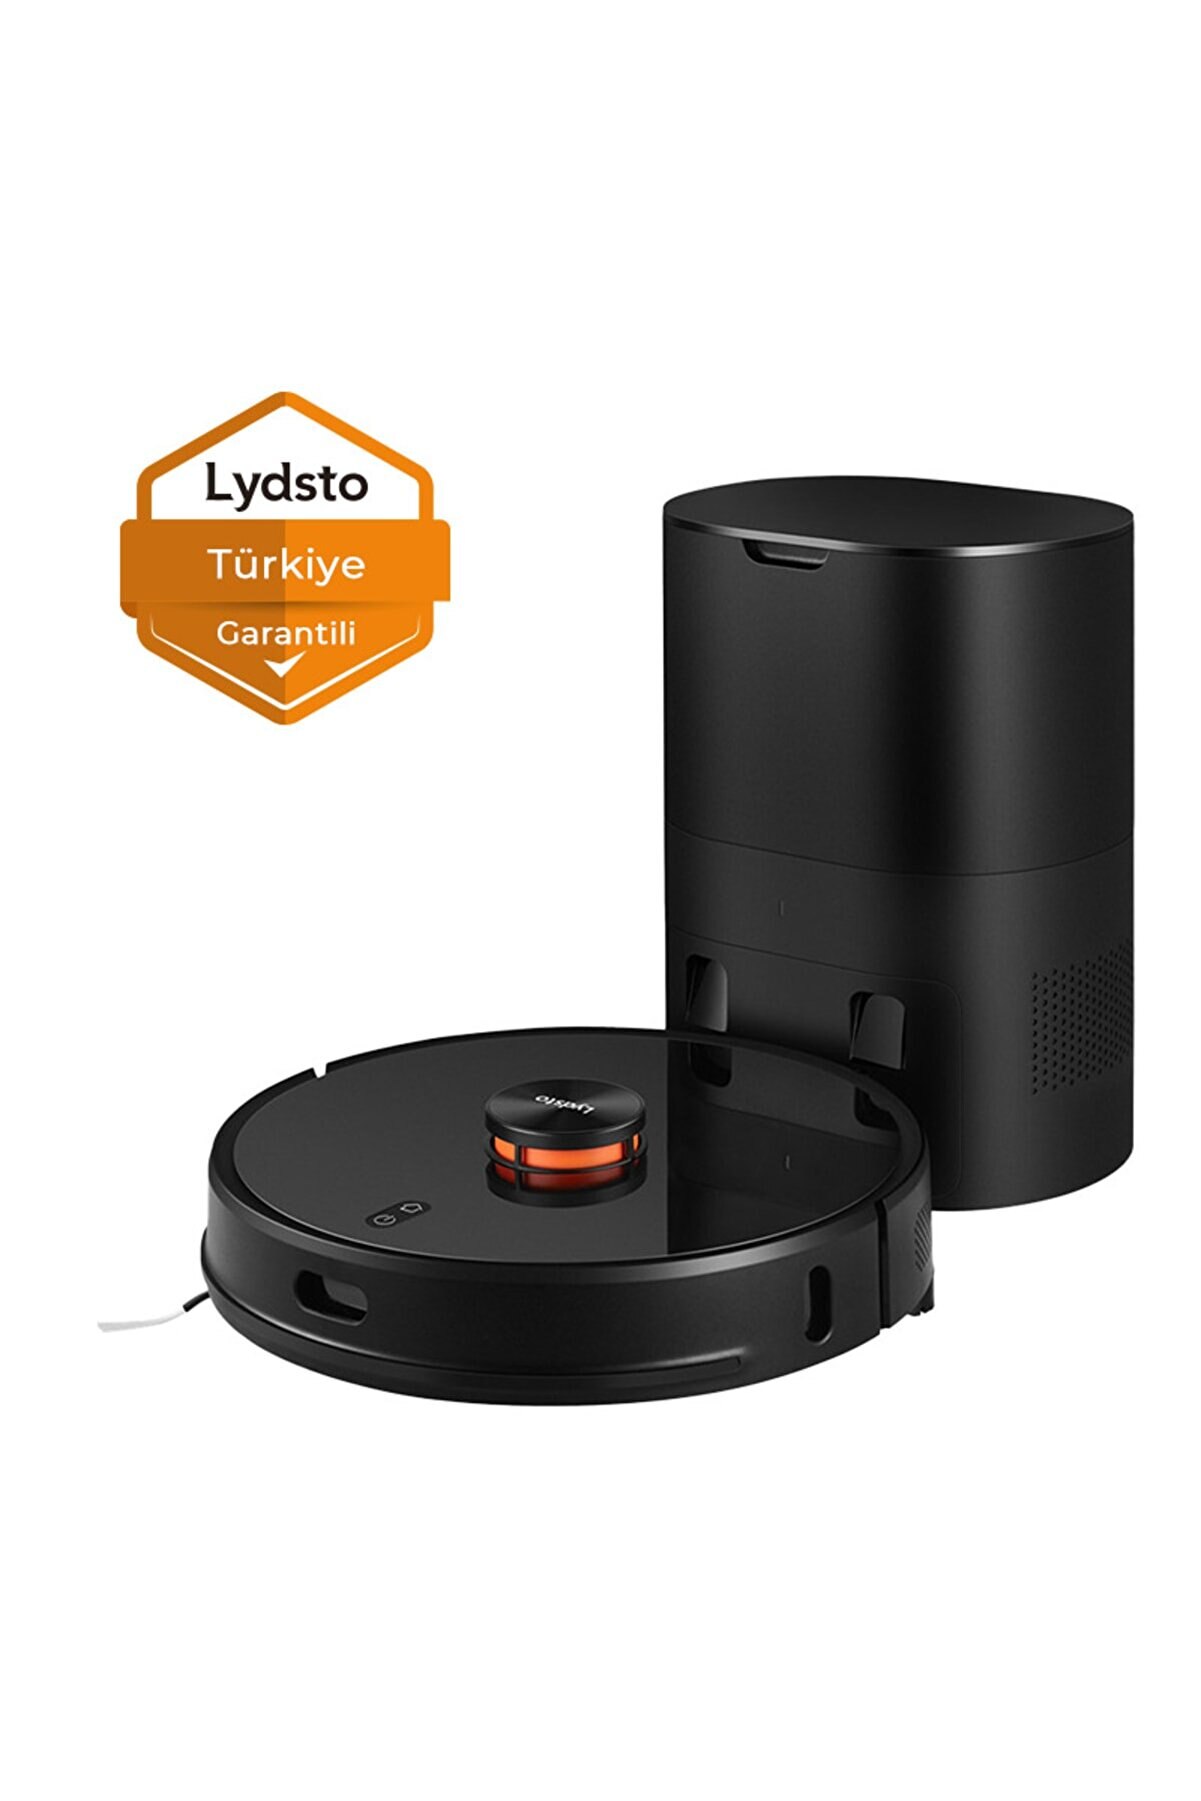 Lydsto R1 Pro Toz Toplama Üniteli Akıllı Robot Süpürge Siyah (Lydsto Türkiye Garantili)